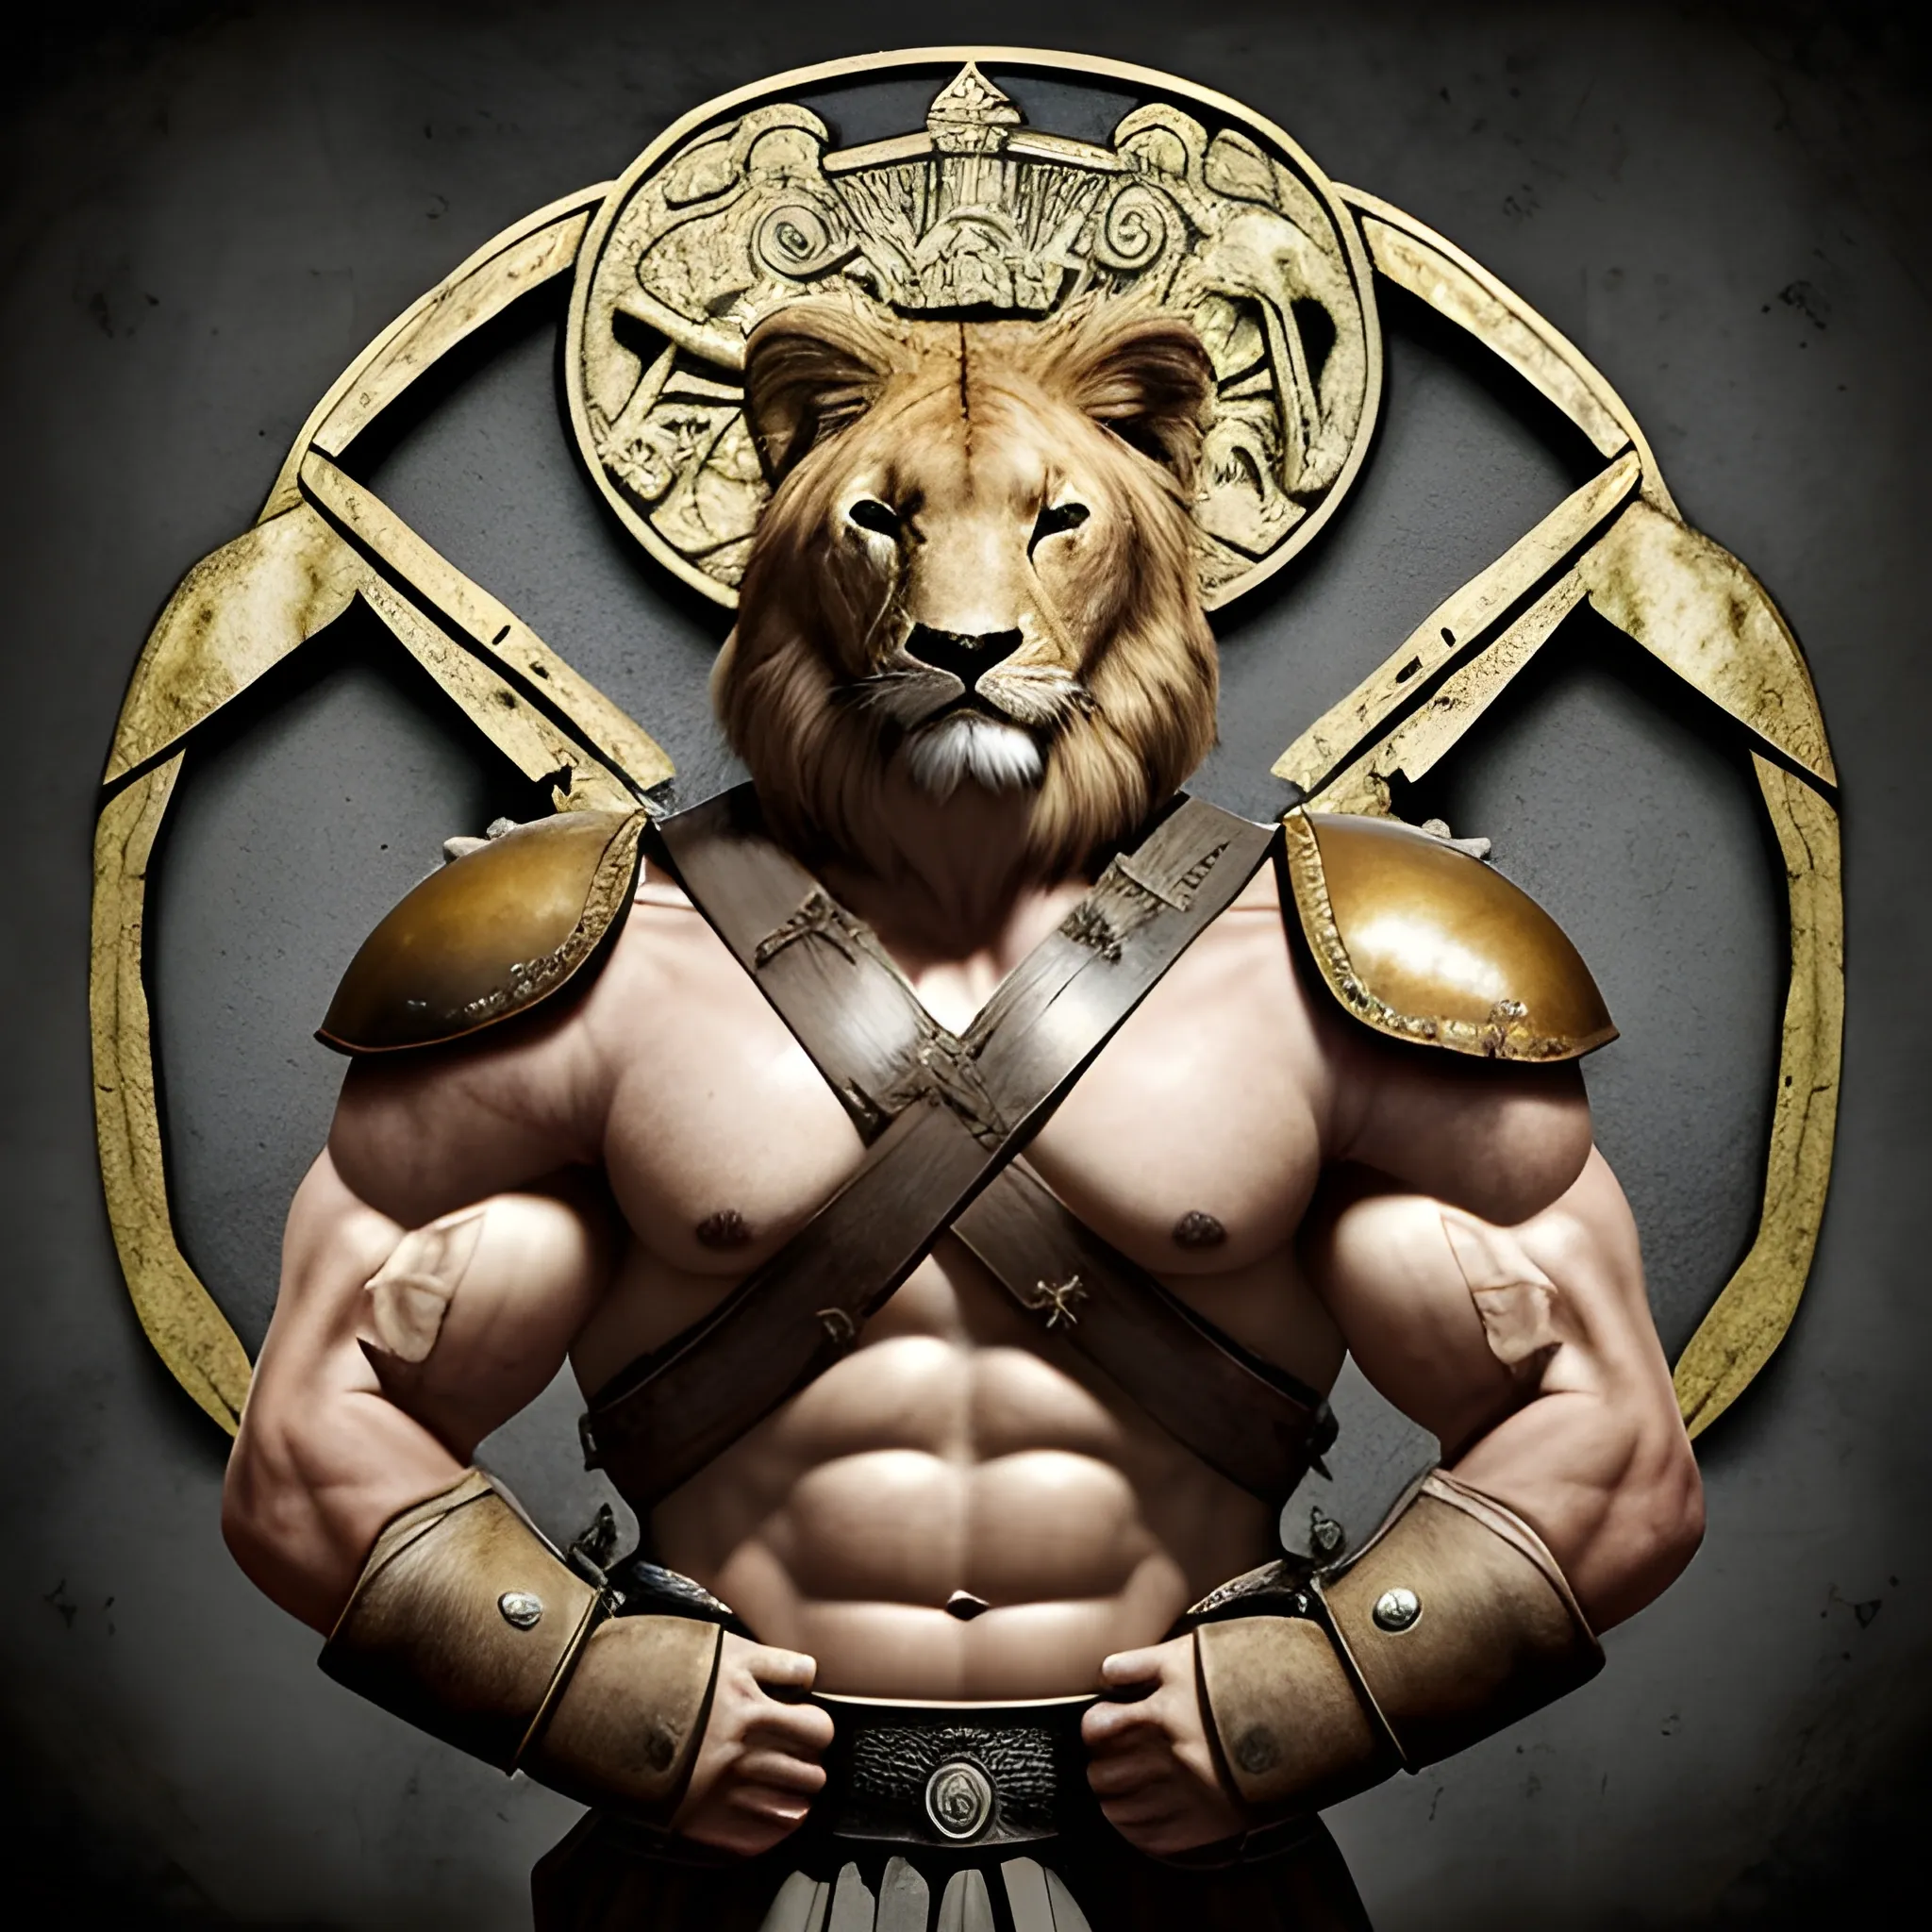 Diseña una imagen épica de un león fuerte y musculoso lleno de marcas de guerra, con armadura reluciente y un escudo majestuoso, listo para enfrentarse a cualquier desafío en un pueblo abandonado